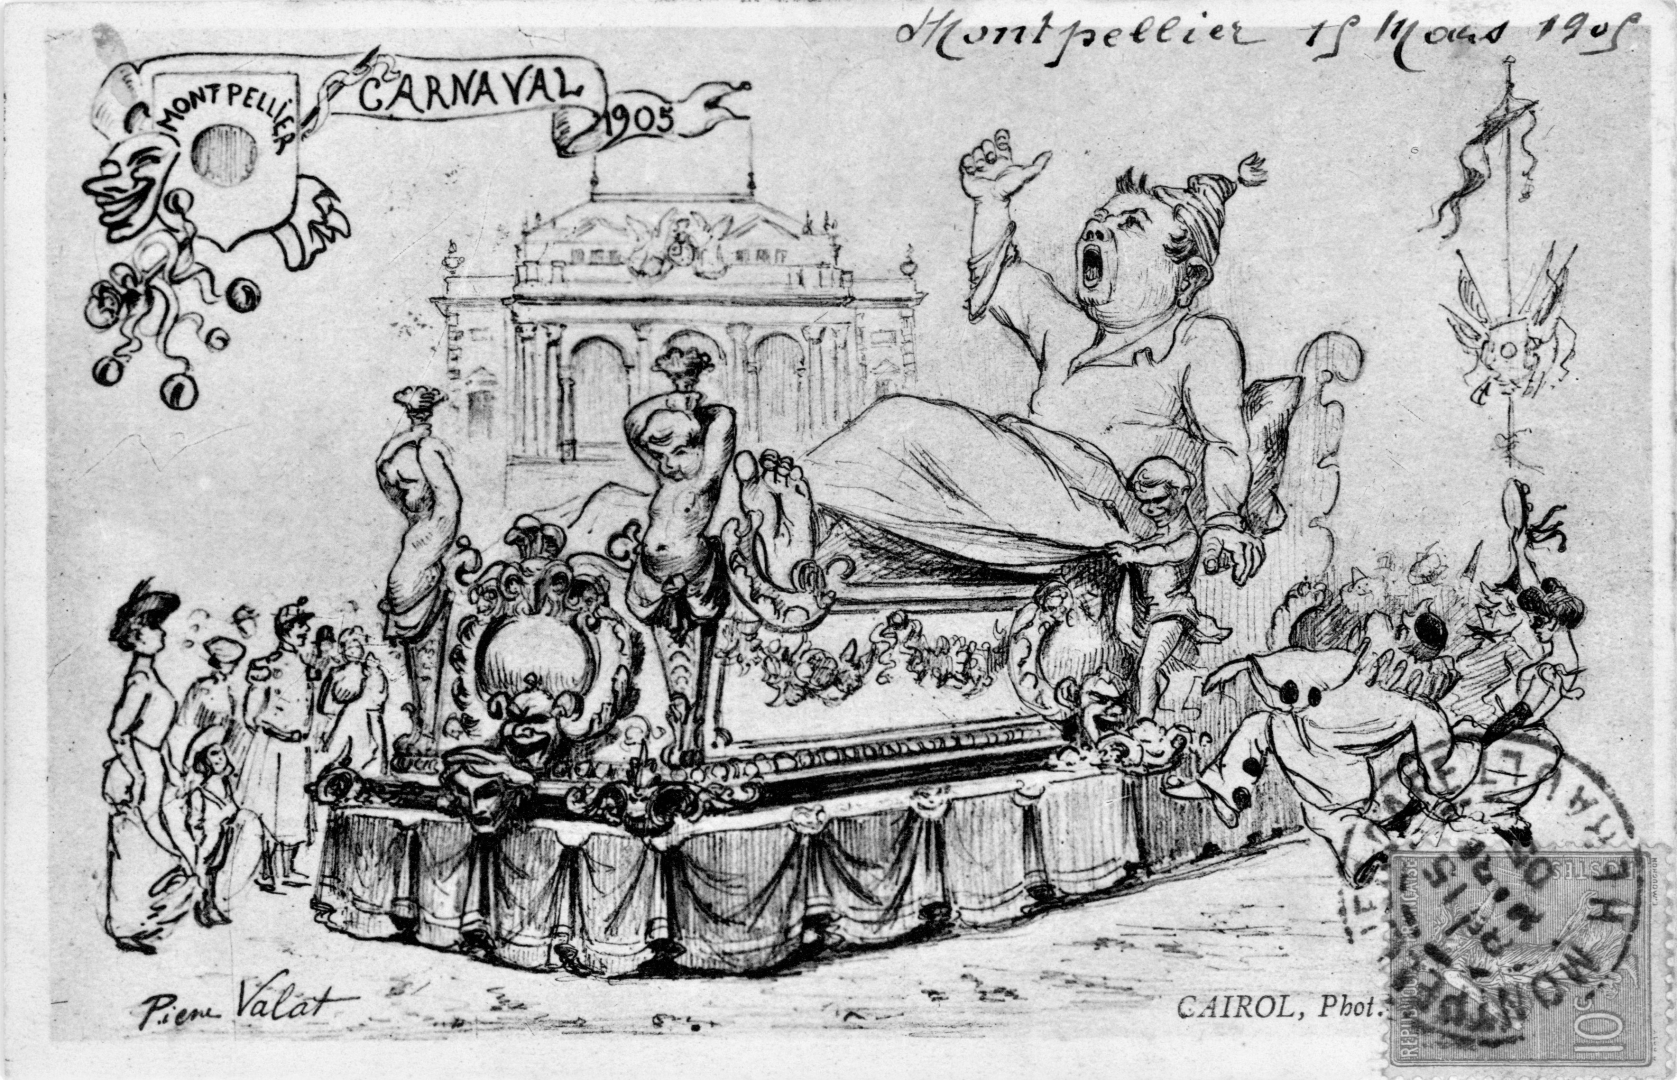 Le bonhomme Carnaval, en 1905, représenté ici par Pierre Valat, devant l'Opéra Comédie